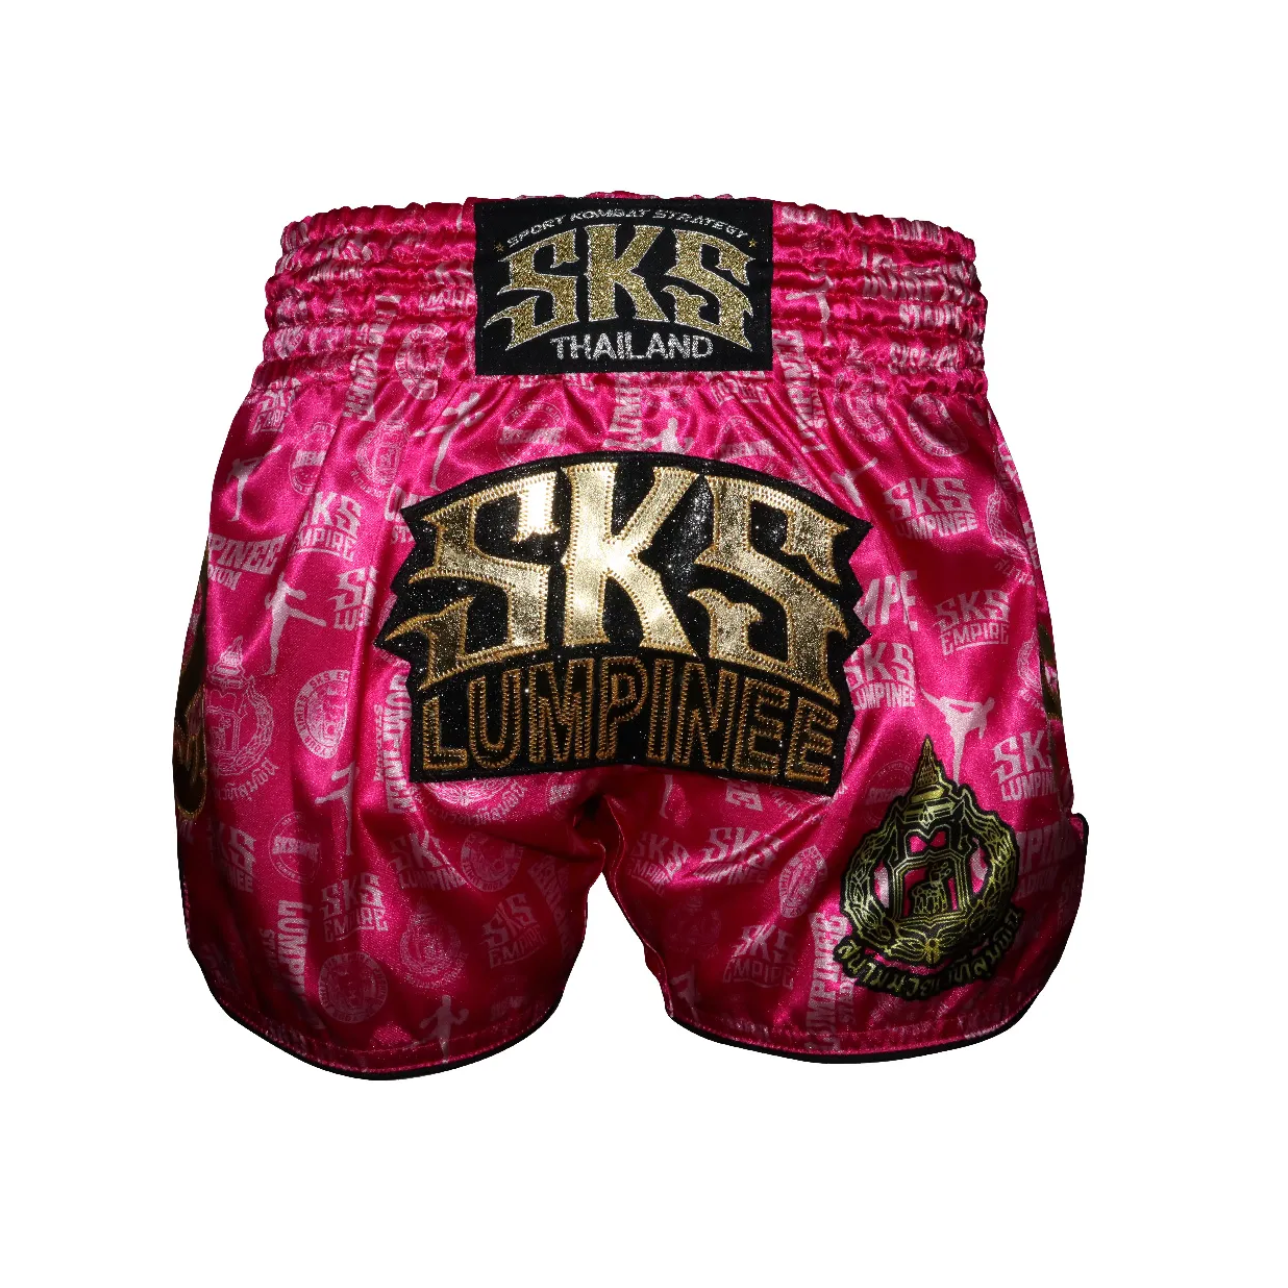 SKS Empire UK SKS Lumpinee Pink Shorts at £50